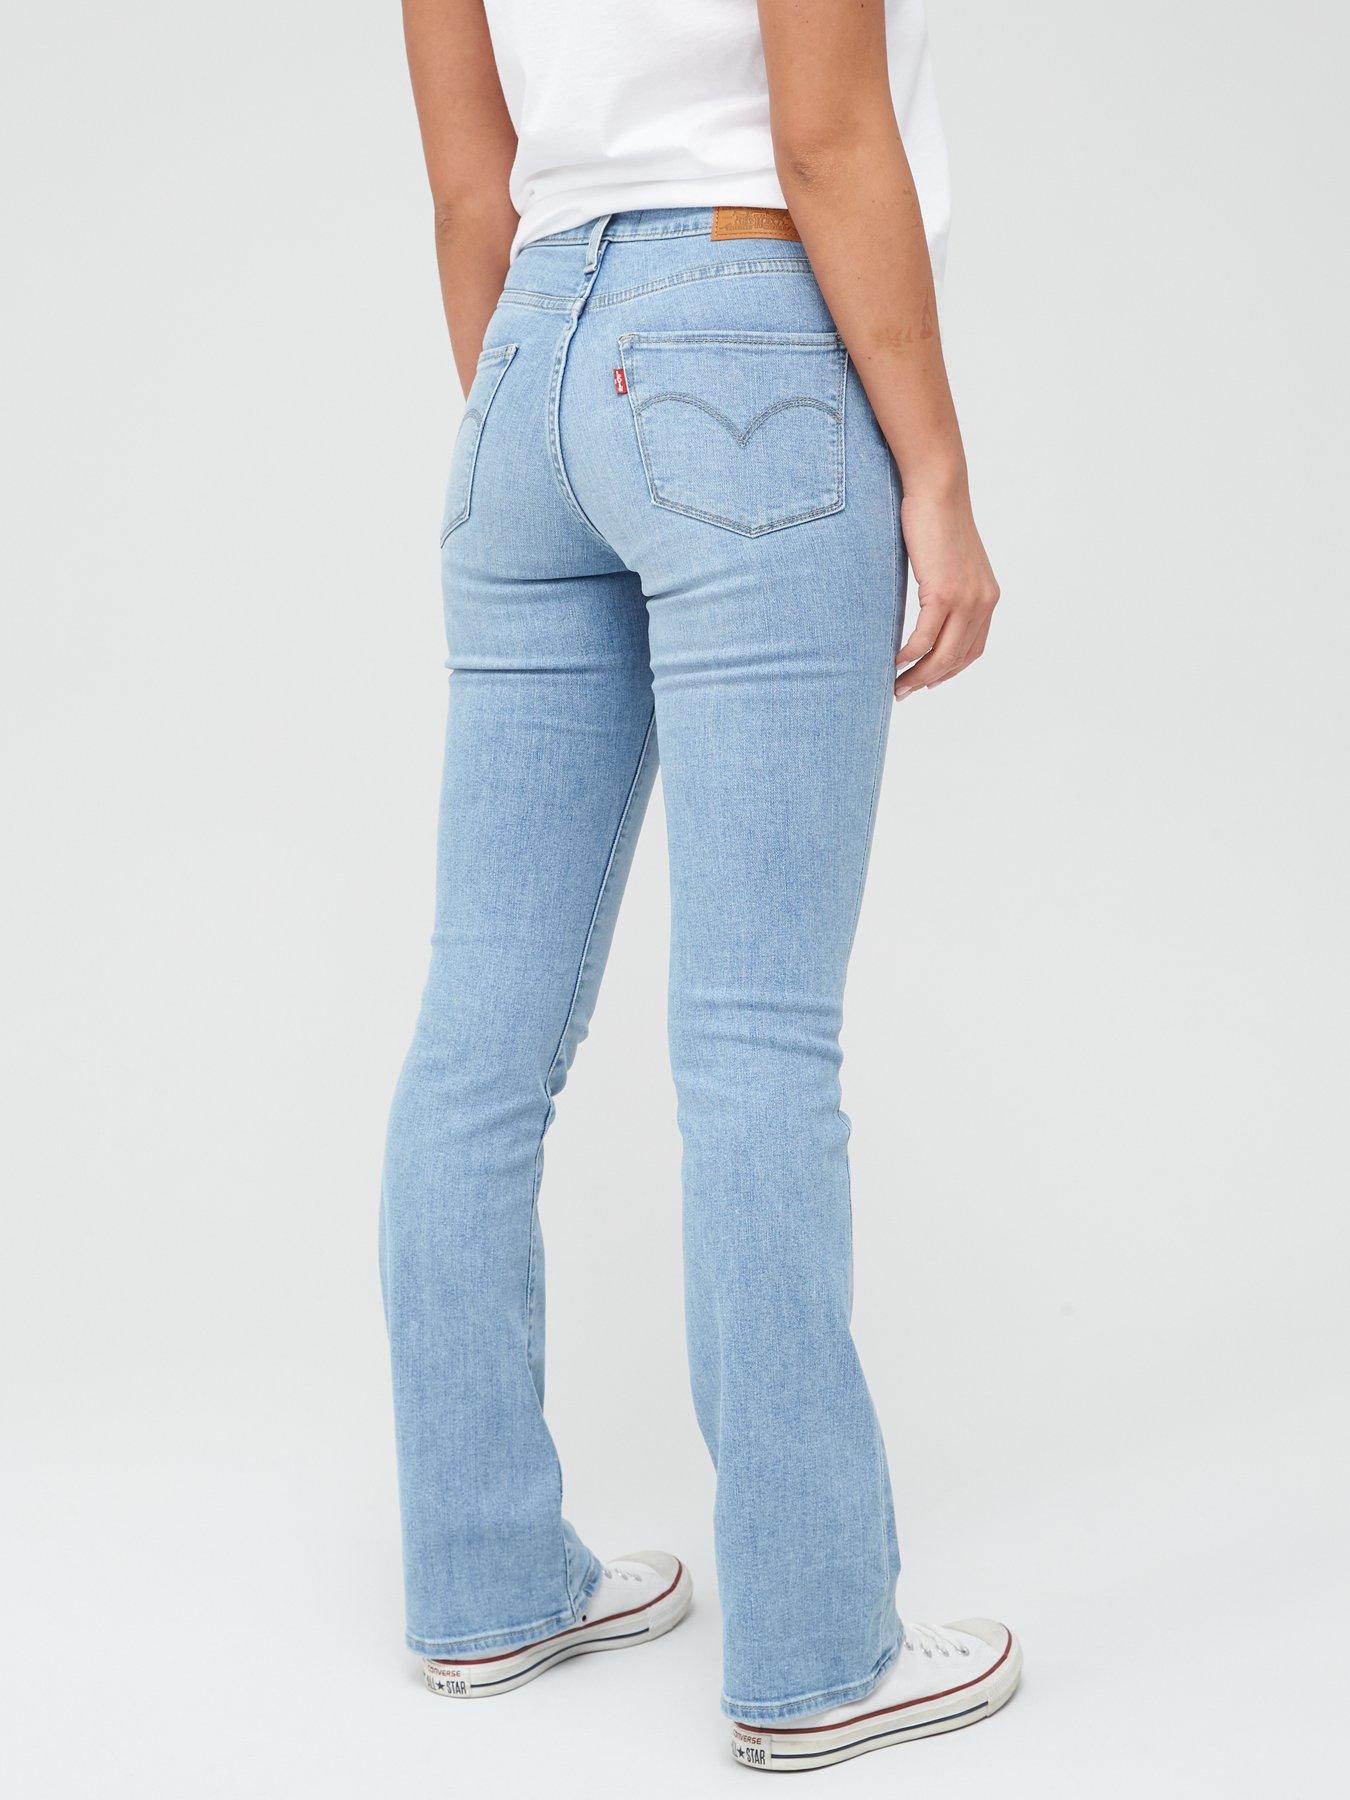 levis 725 jeans